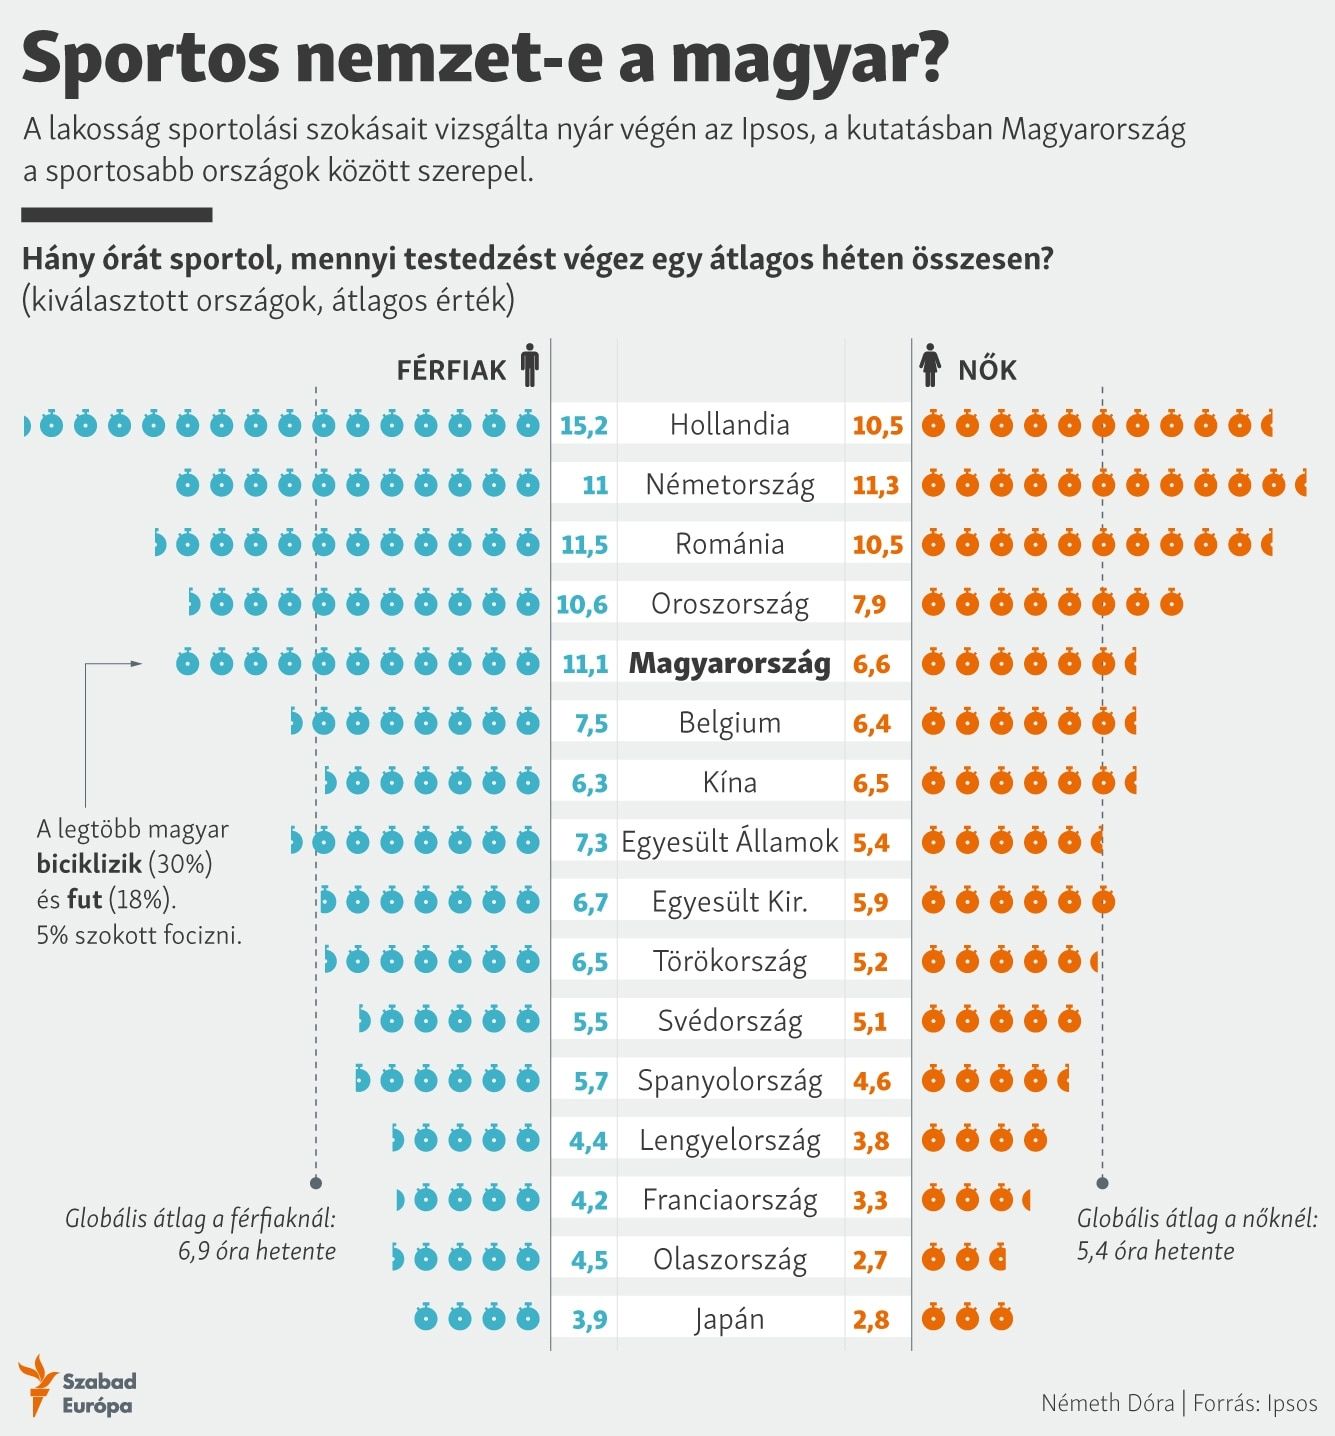 Mennyire sportos nemzet a magyar? Meglepő válasz született a kérdésre